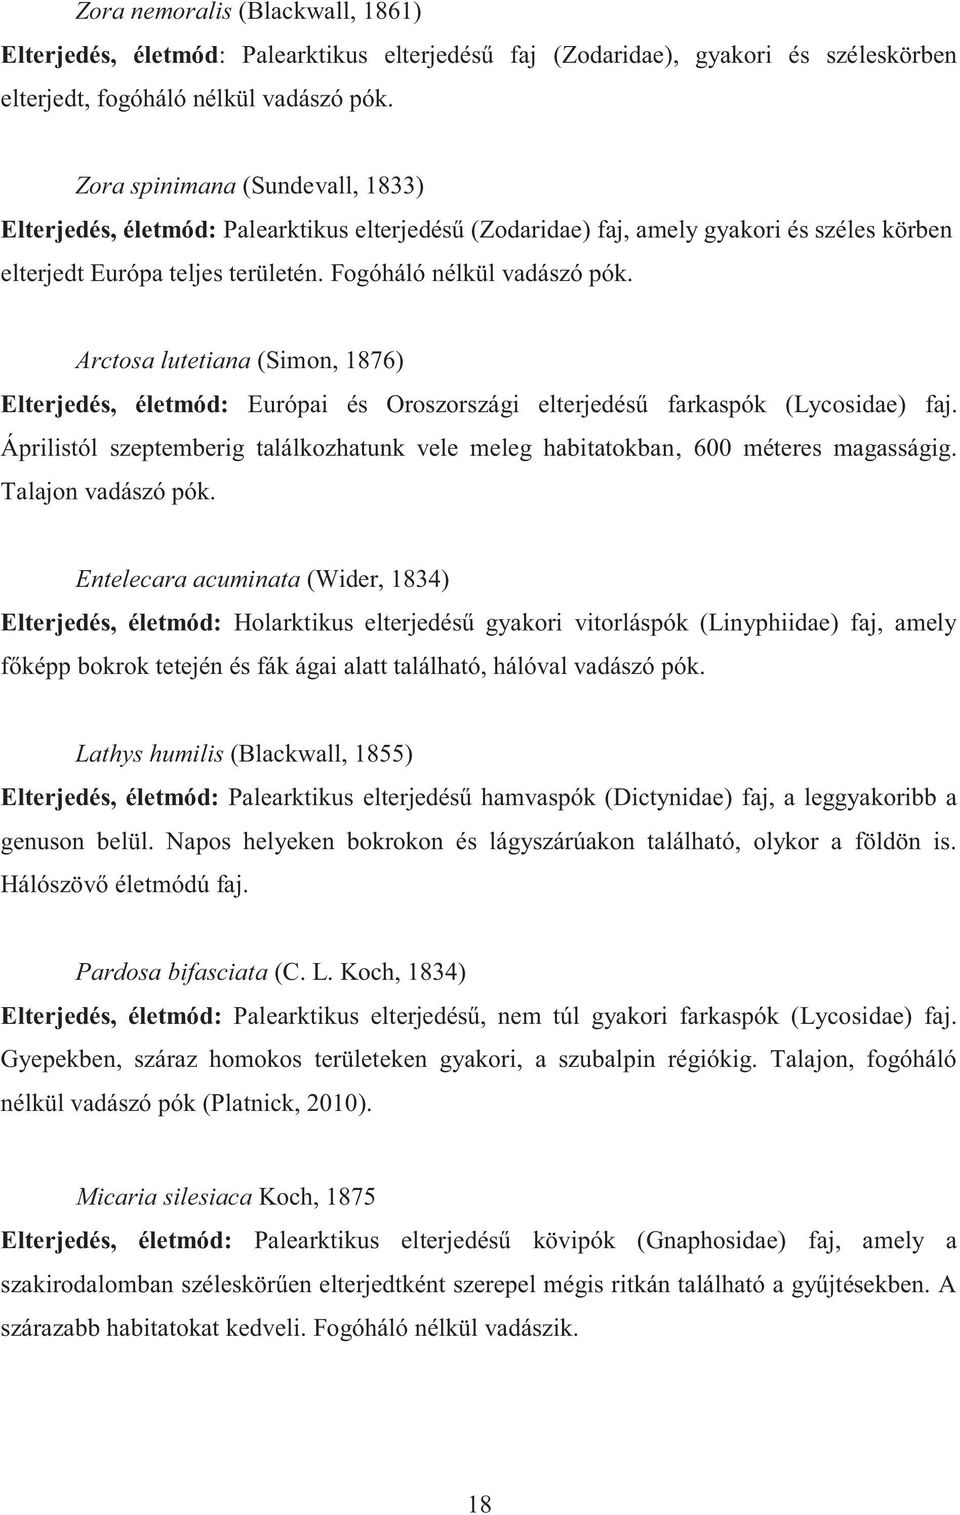 Arctosa lutetiana (Simon, 1876) Elterjedés, életmód: Európai és Oroszországi elterjedésű farkaspók (Lycosidae) faj.